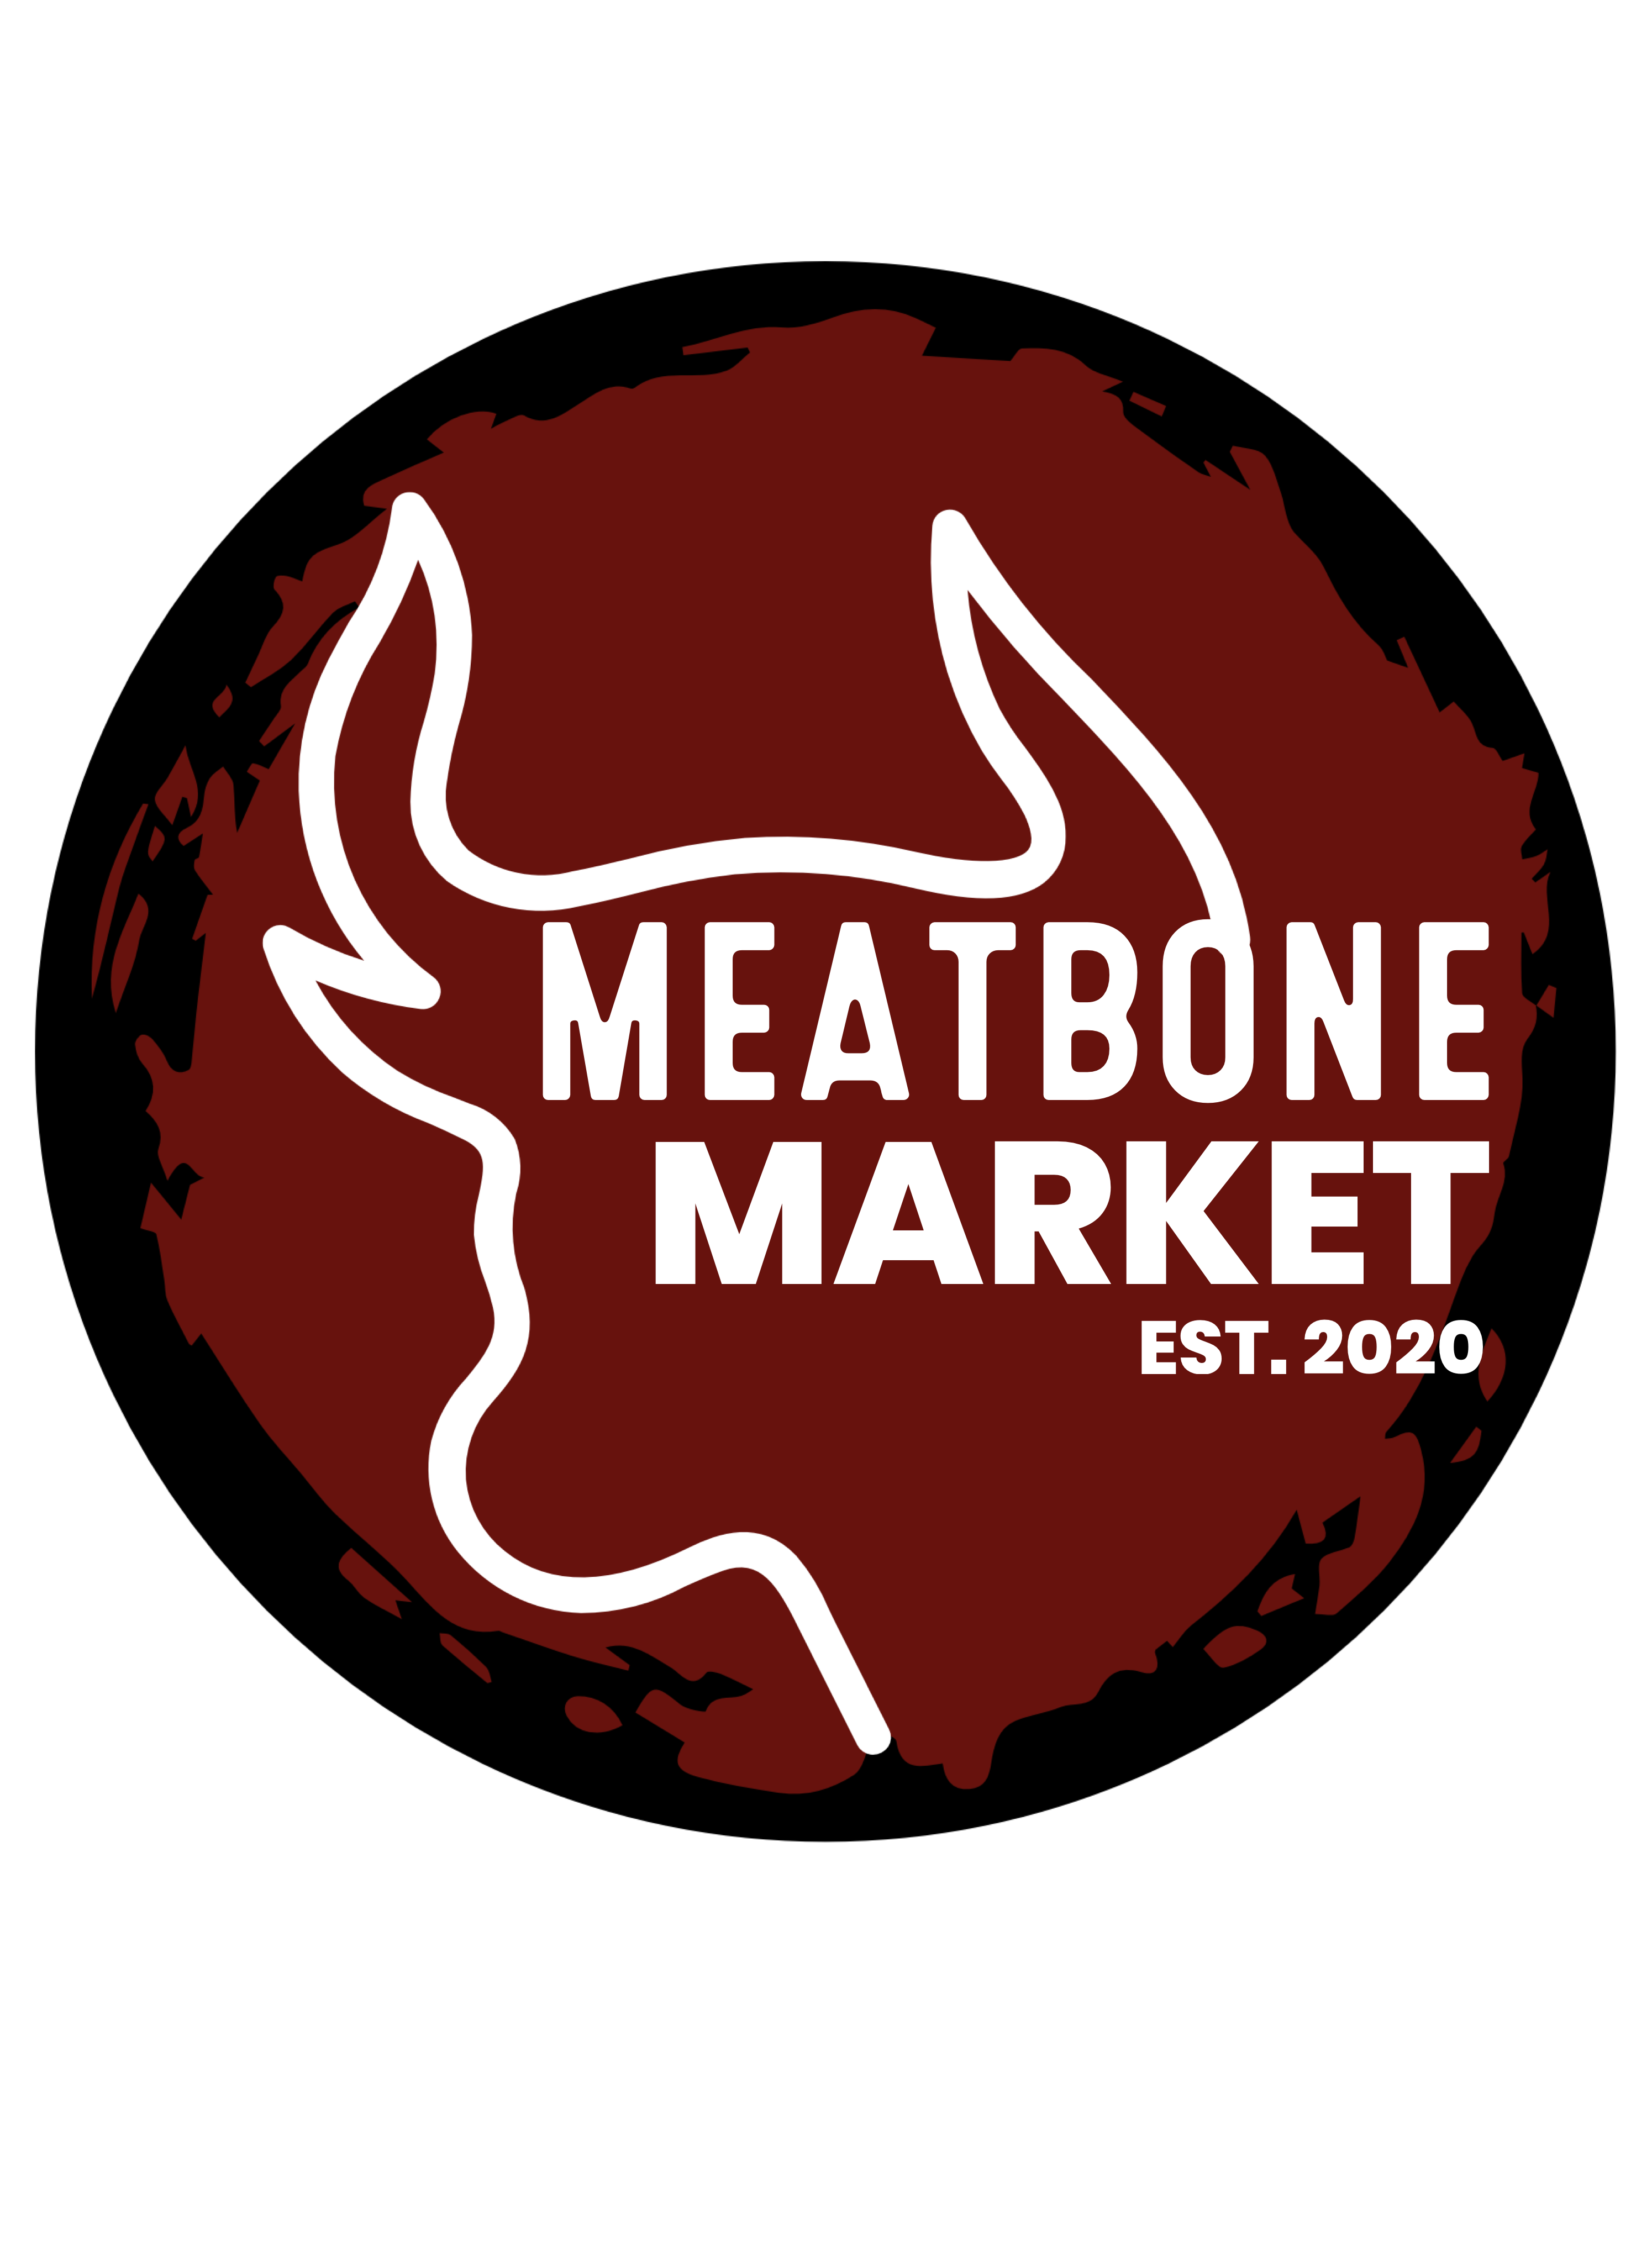 Meatbone Market